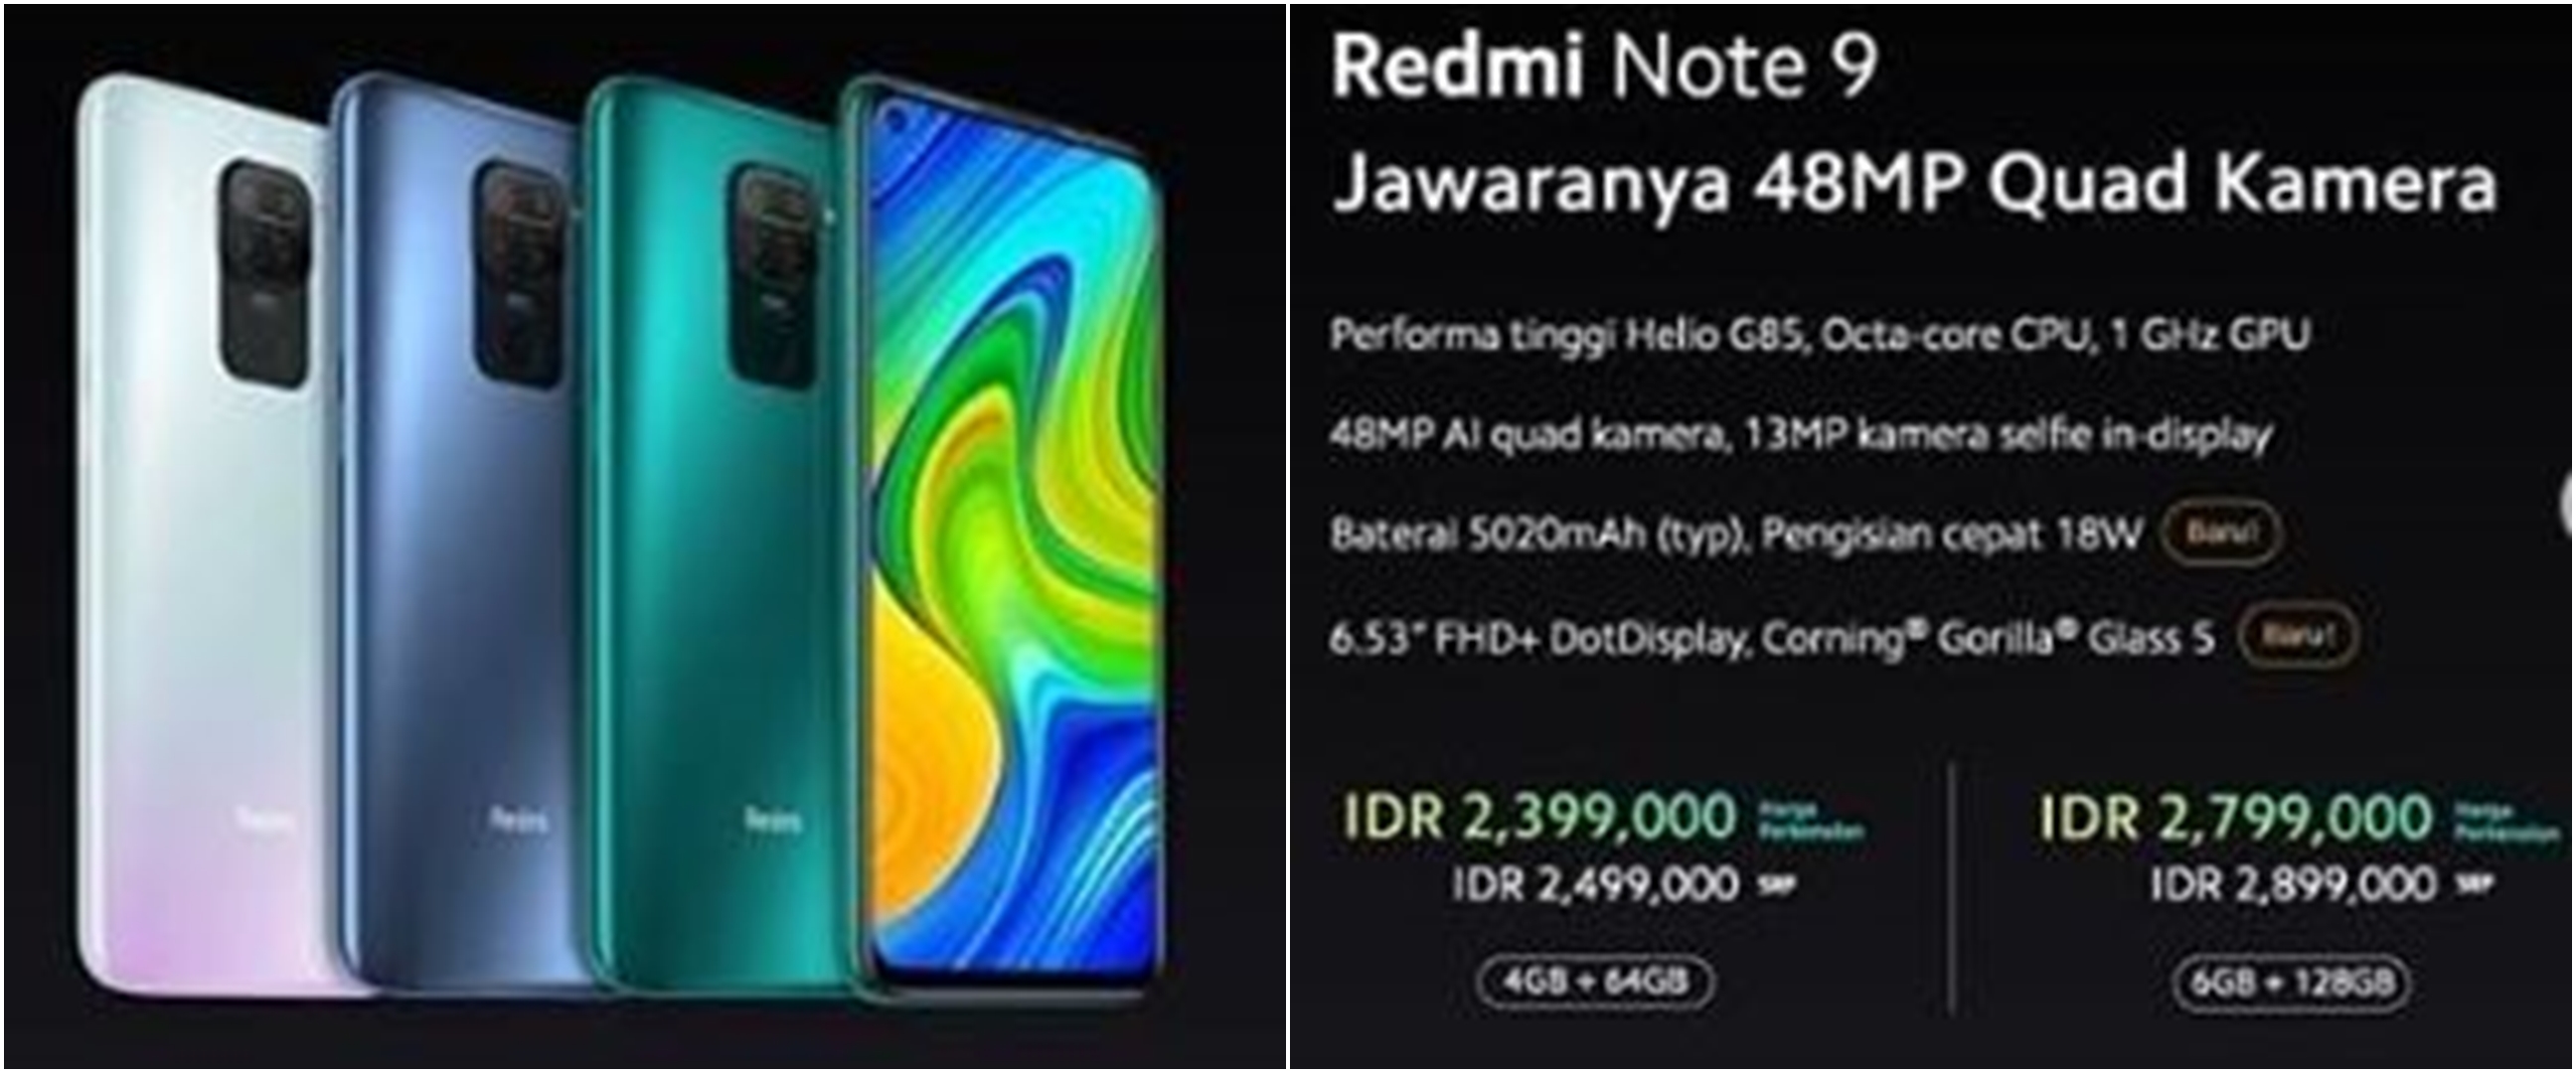 5 Fakta Redmi Note 9 yang baru rilis di Indonesia